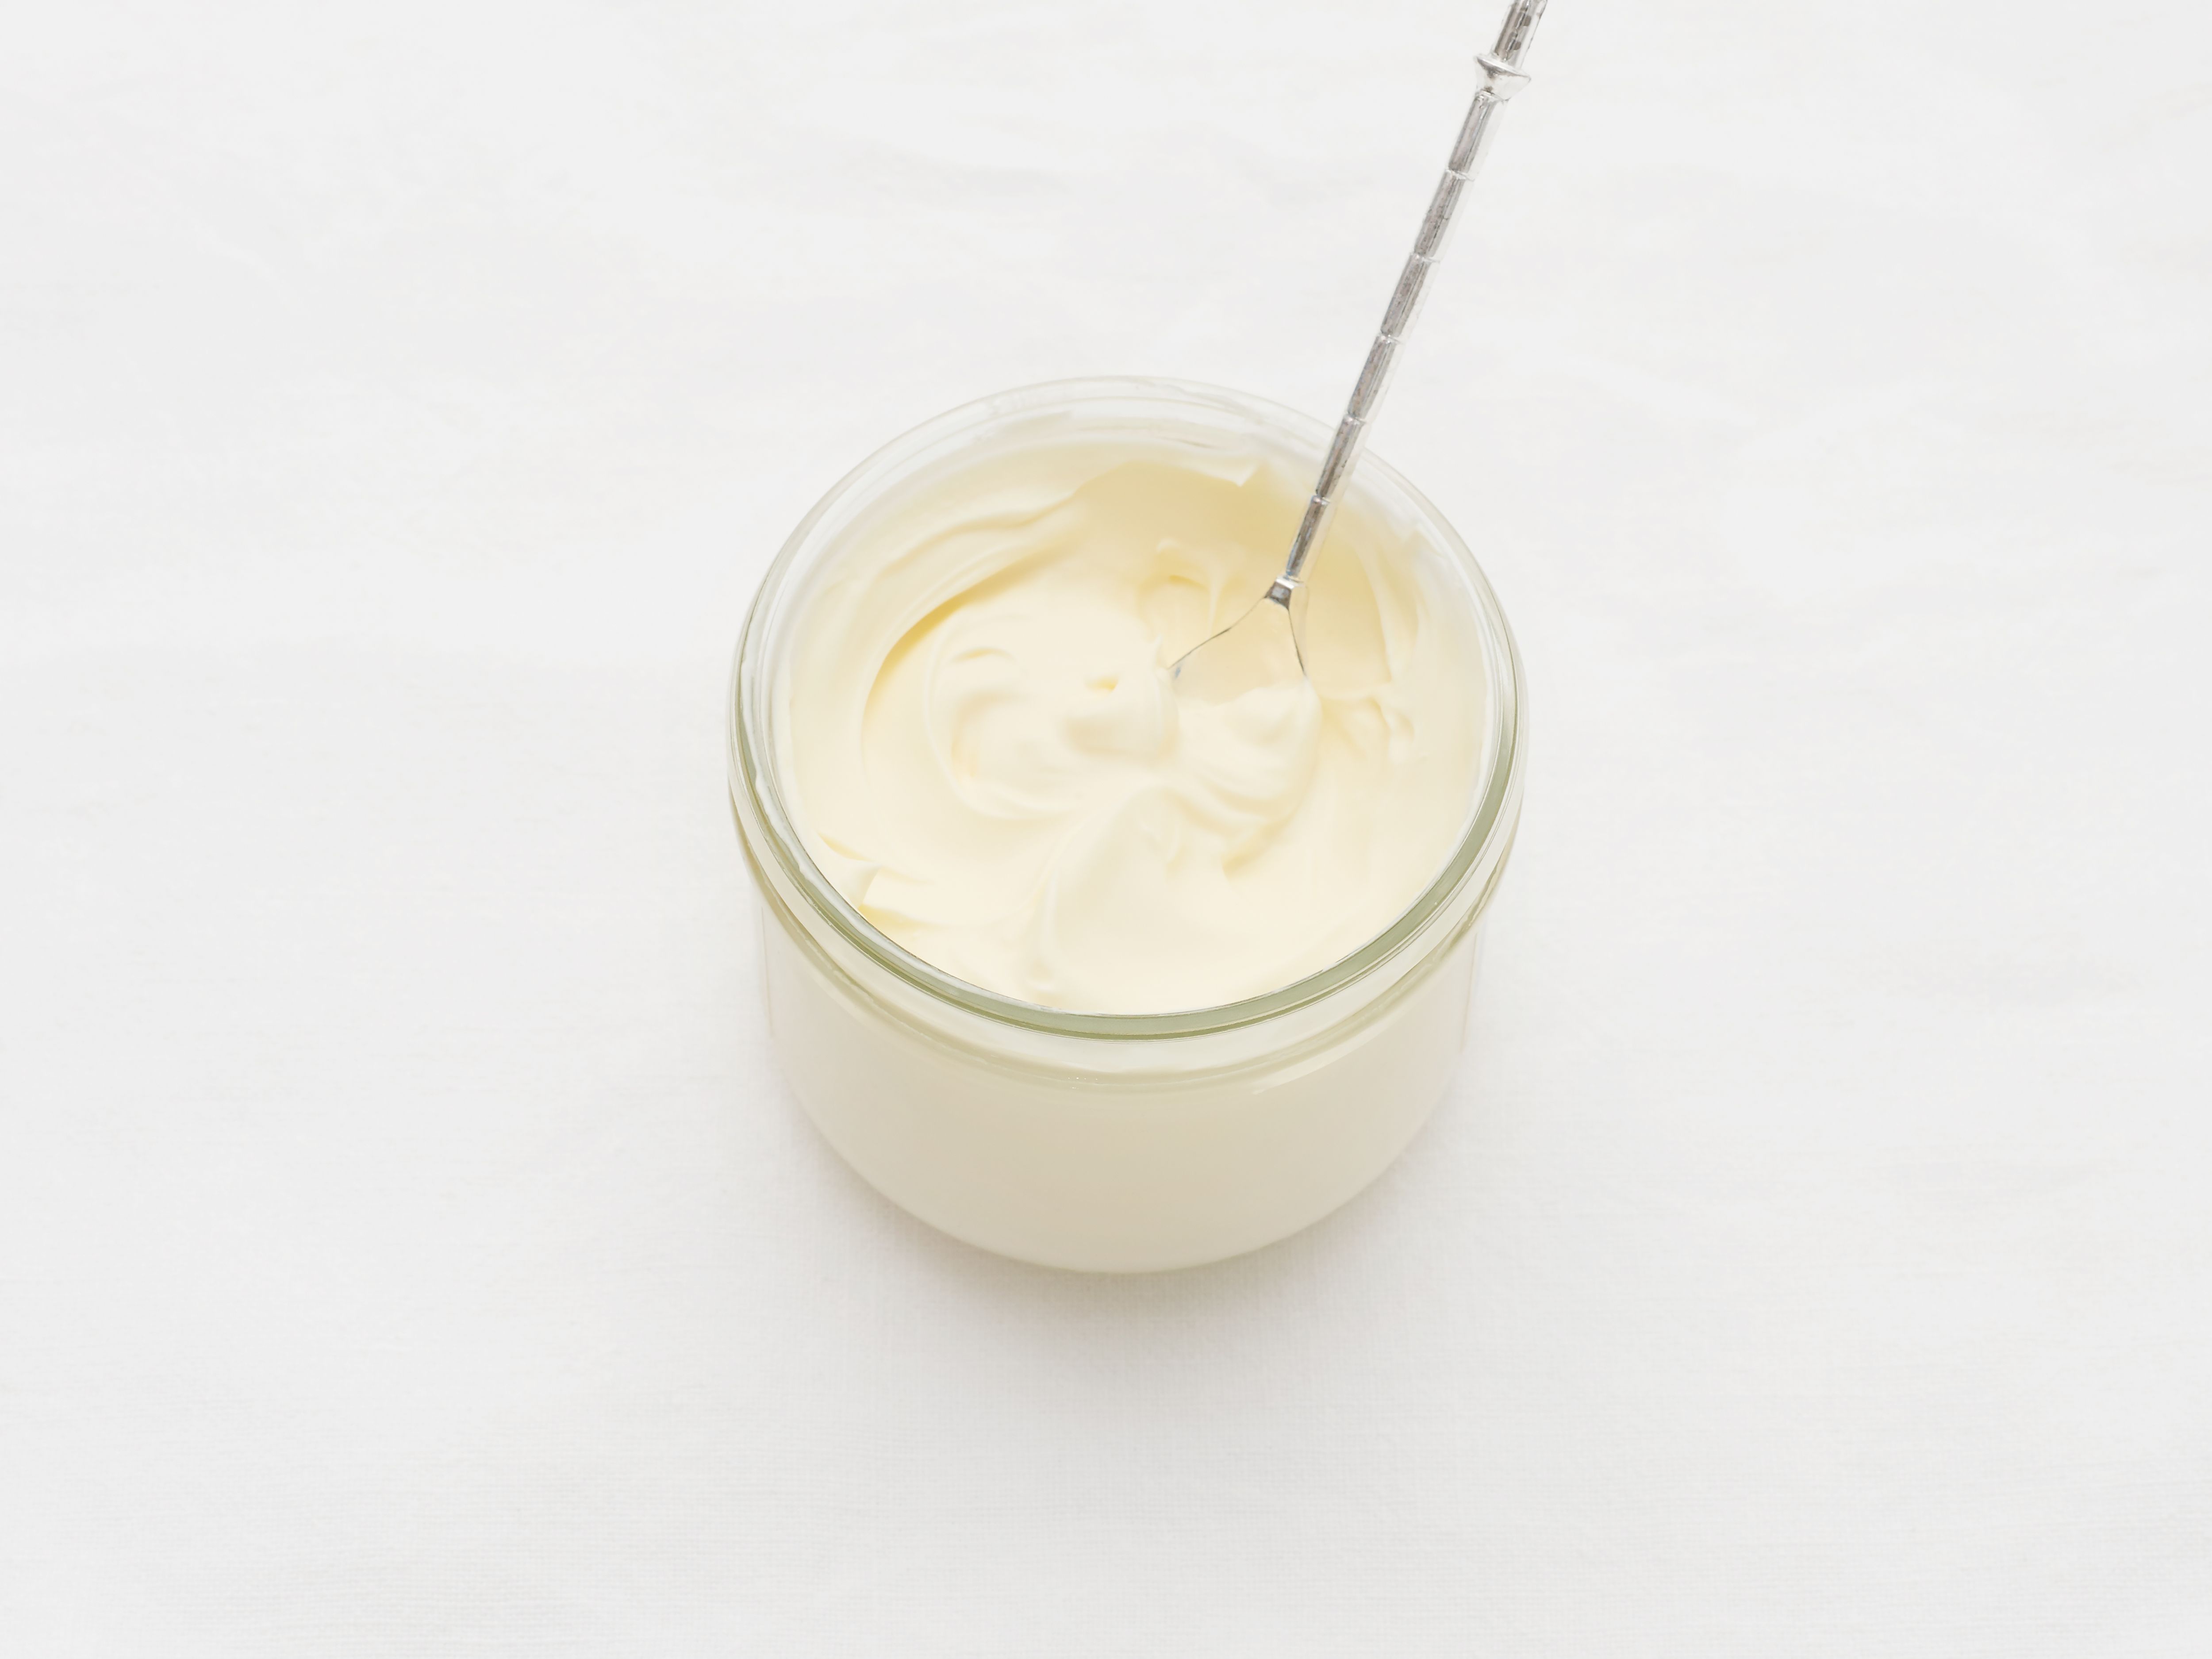 Entre beurre, crème fraîche, huile et crème de coco, faut-il vraiment  choisir ? • Les Produits Laitiers